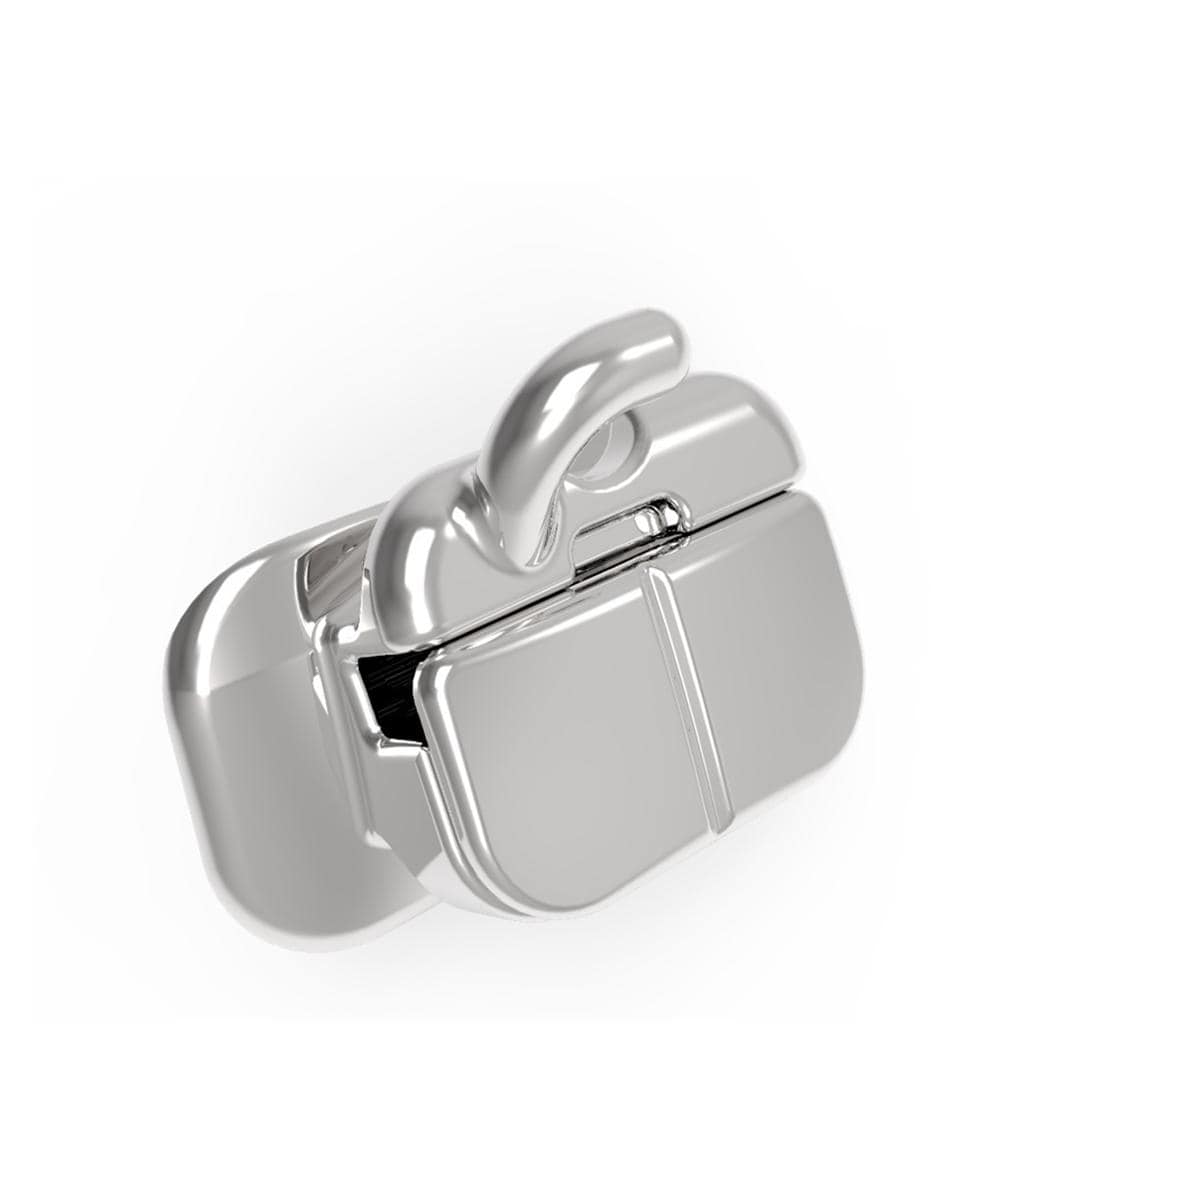 CARRIERE SLX 3D Metal Self Ligating Bracket .022 - UL6 HK (977-UL6-HK-10), 10 stuks